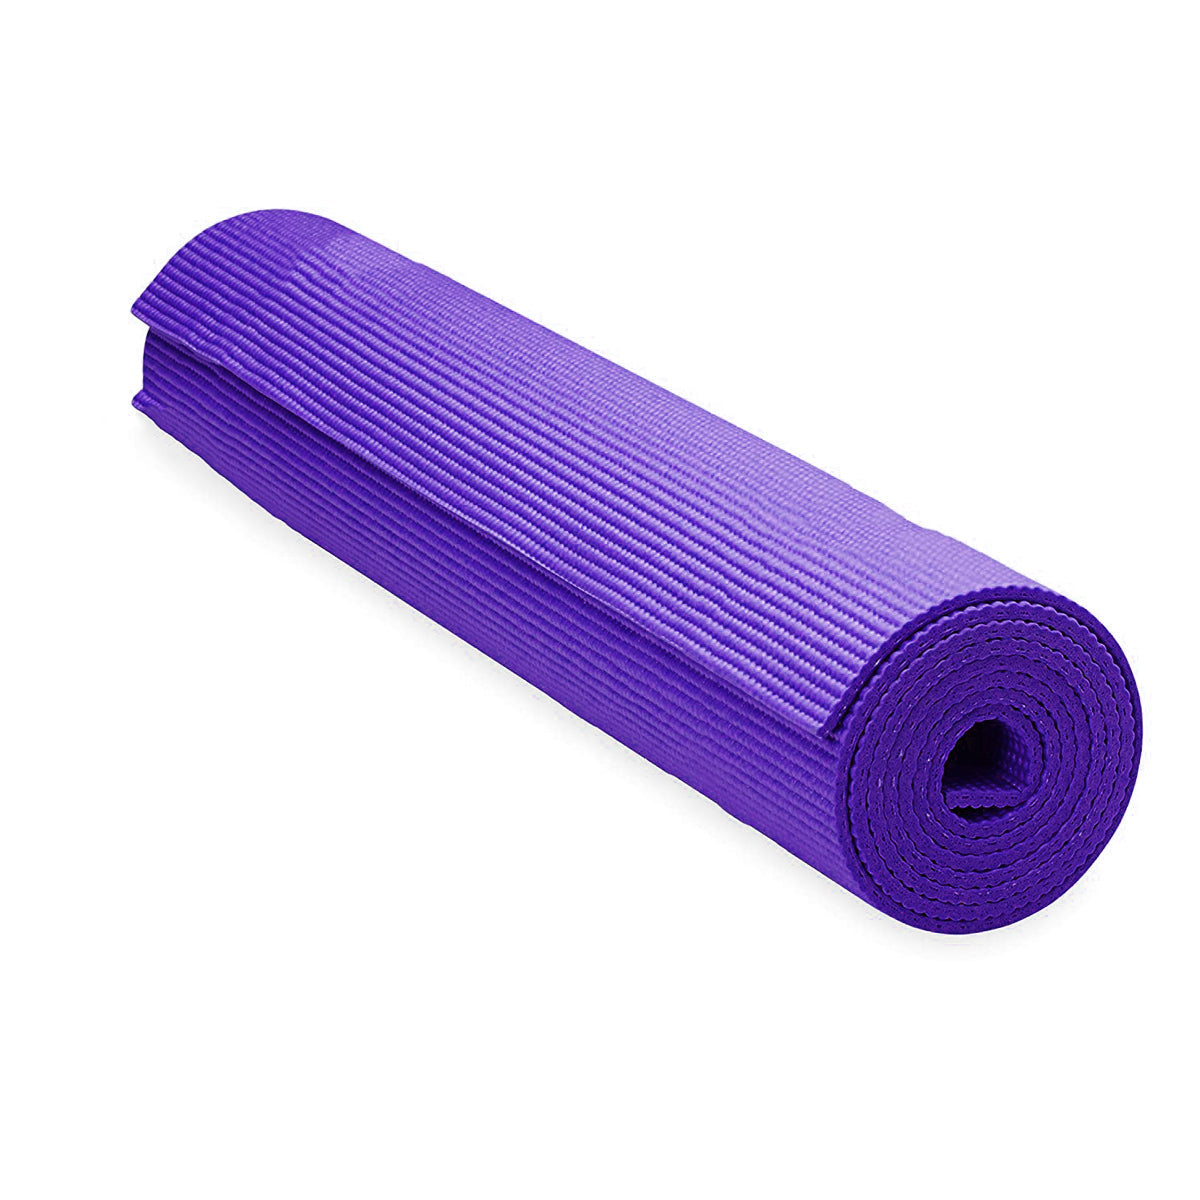 PVC Fitness Yoga Mat 6mm Thick for Workout (6 Feet x 2 Feet) (ART01731)